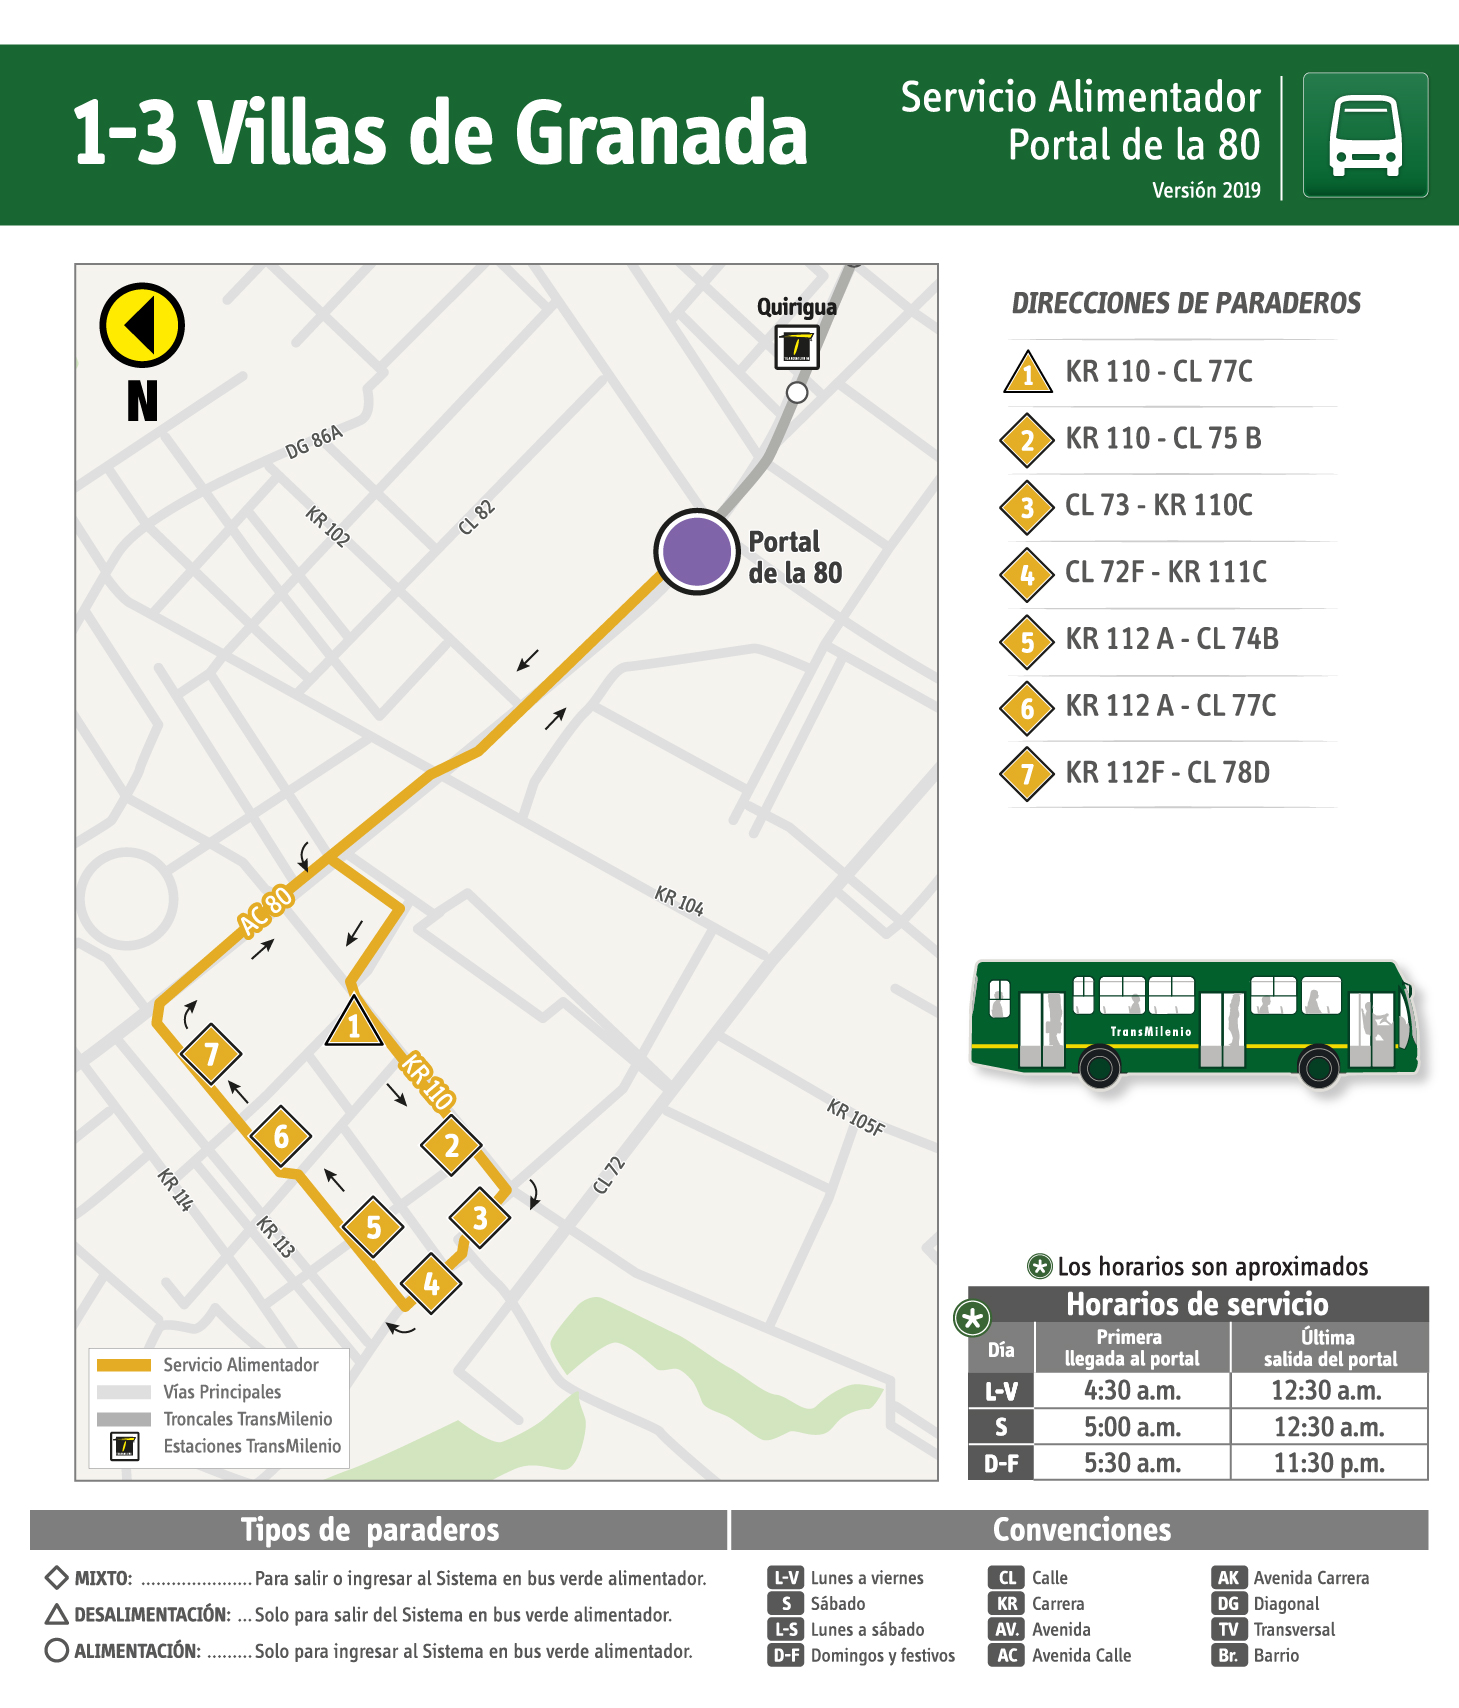 Plegable de la ruta 1-3 Villas de Granada